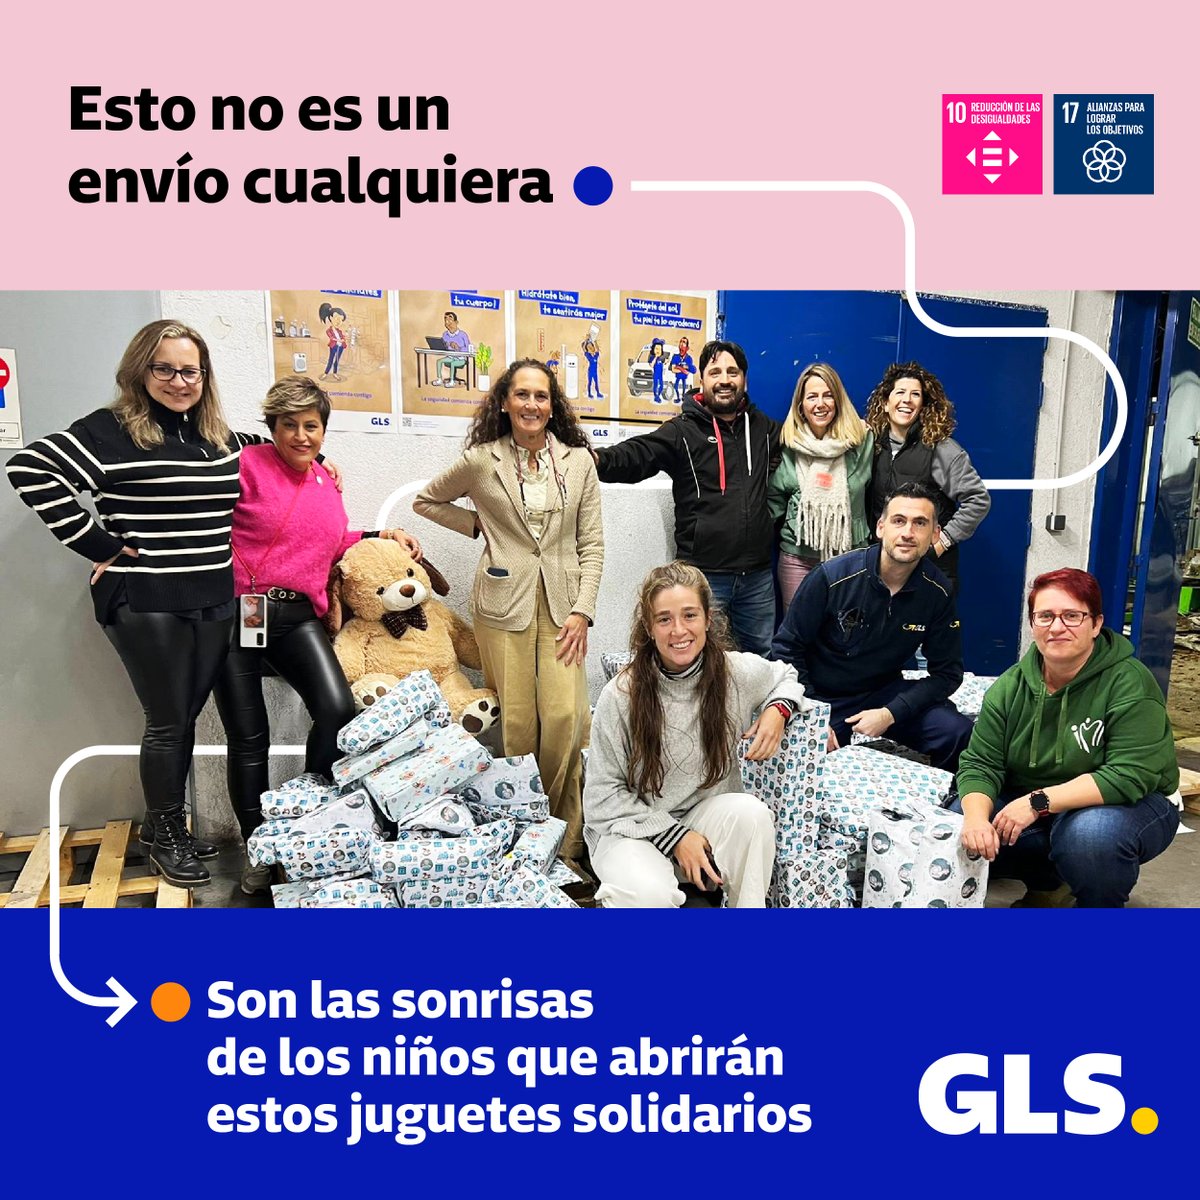 ¡Regalando sonrisas! Colaboramos con @martita_ortega y su equipo en la recogida solidaria de juguetes para los niños y niñas ingresados en los hospitales de Madrid. Transportando ilusiones. ¡Gracias por hacernos partícipes, Marta! #GLSSpain #ThinkSocial #ODS10 #ODS17